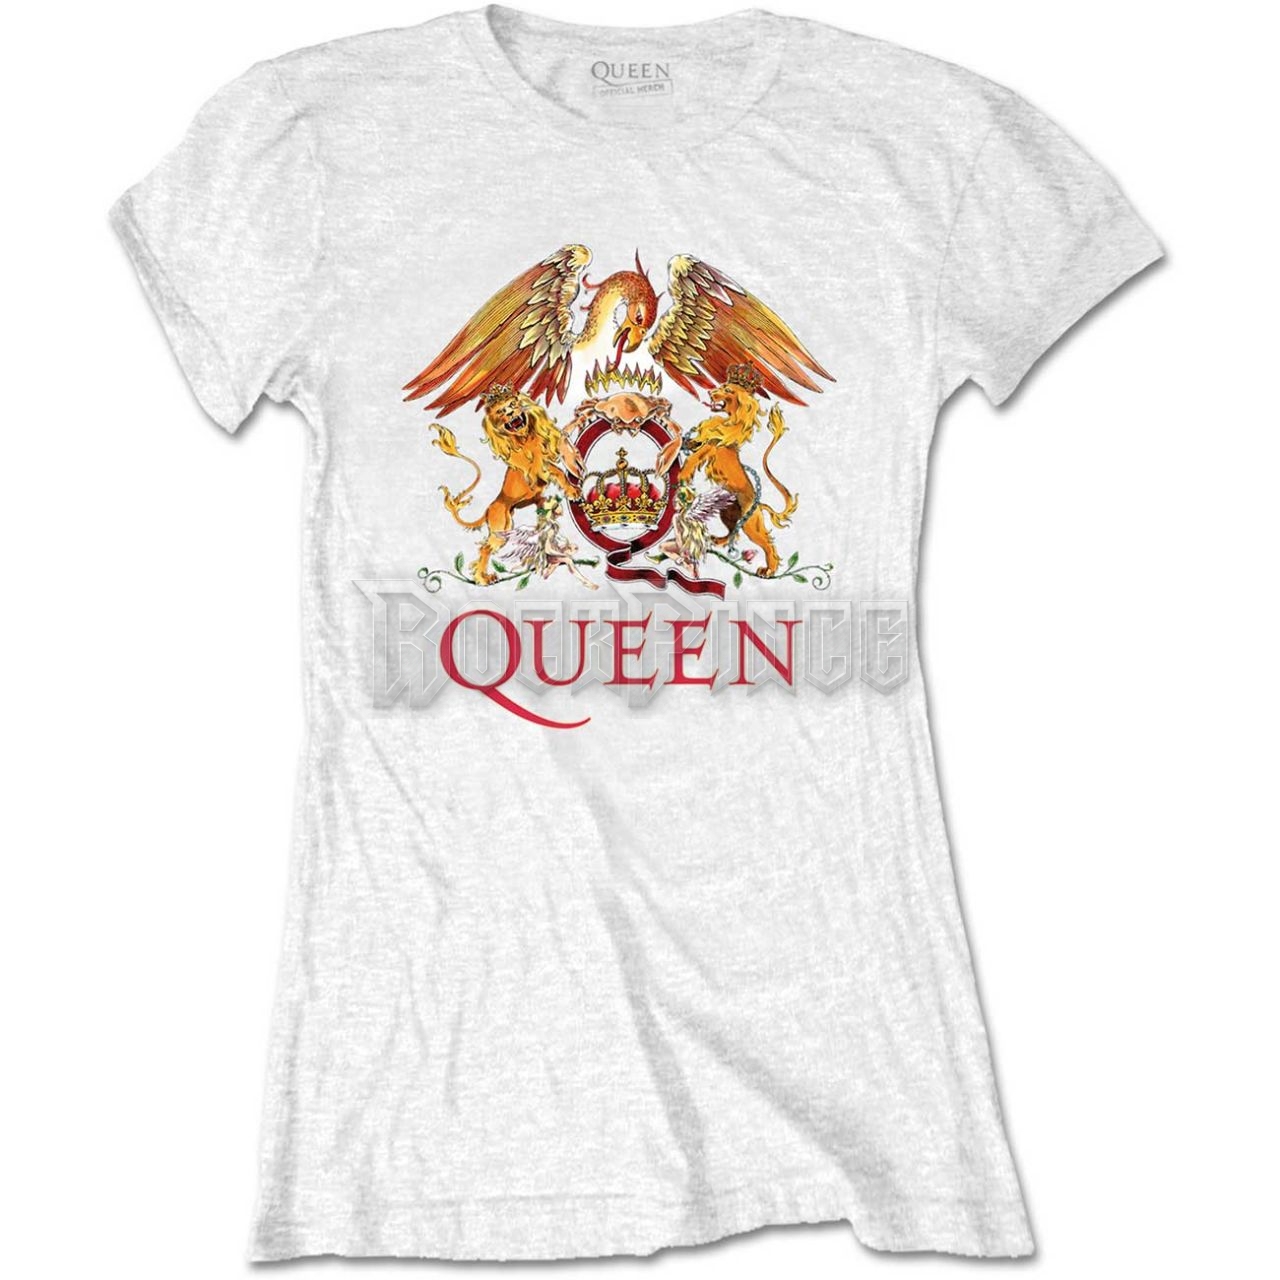 Queen - Classic Crest - női póló - QUTS03LW